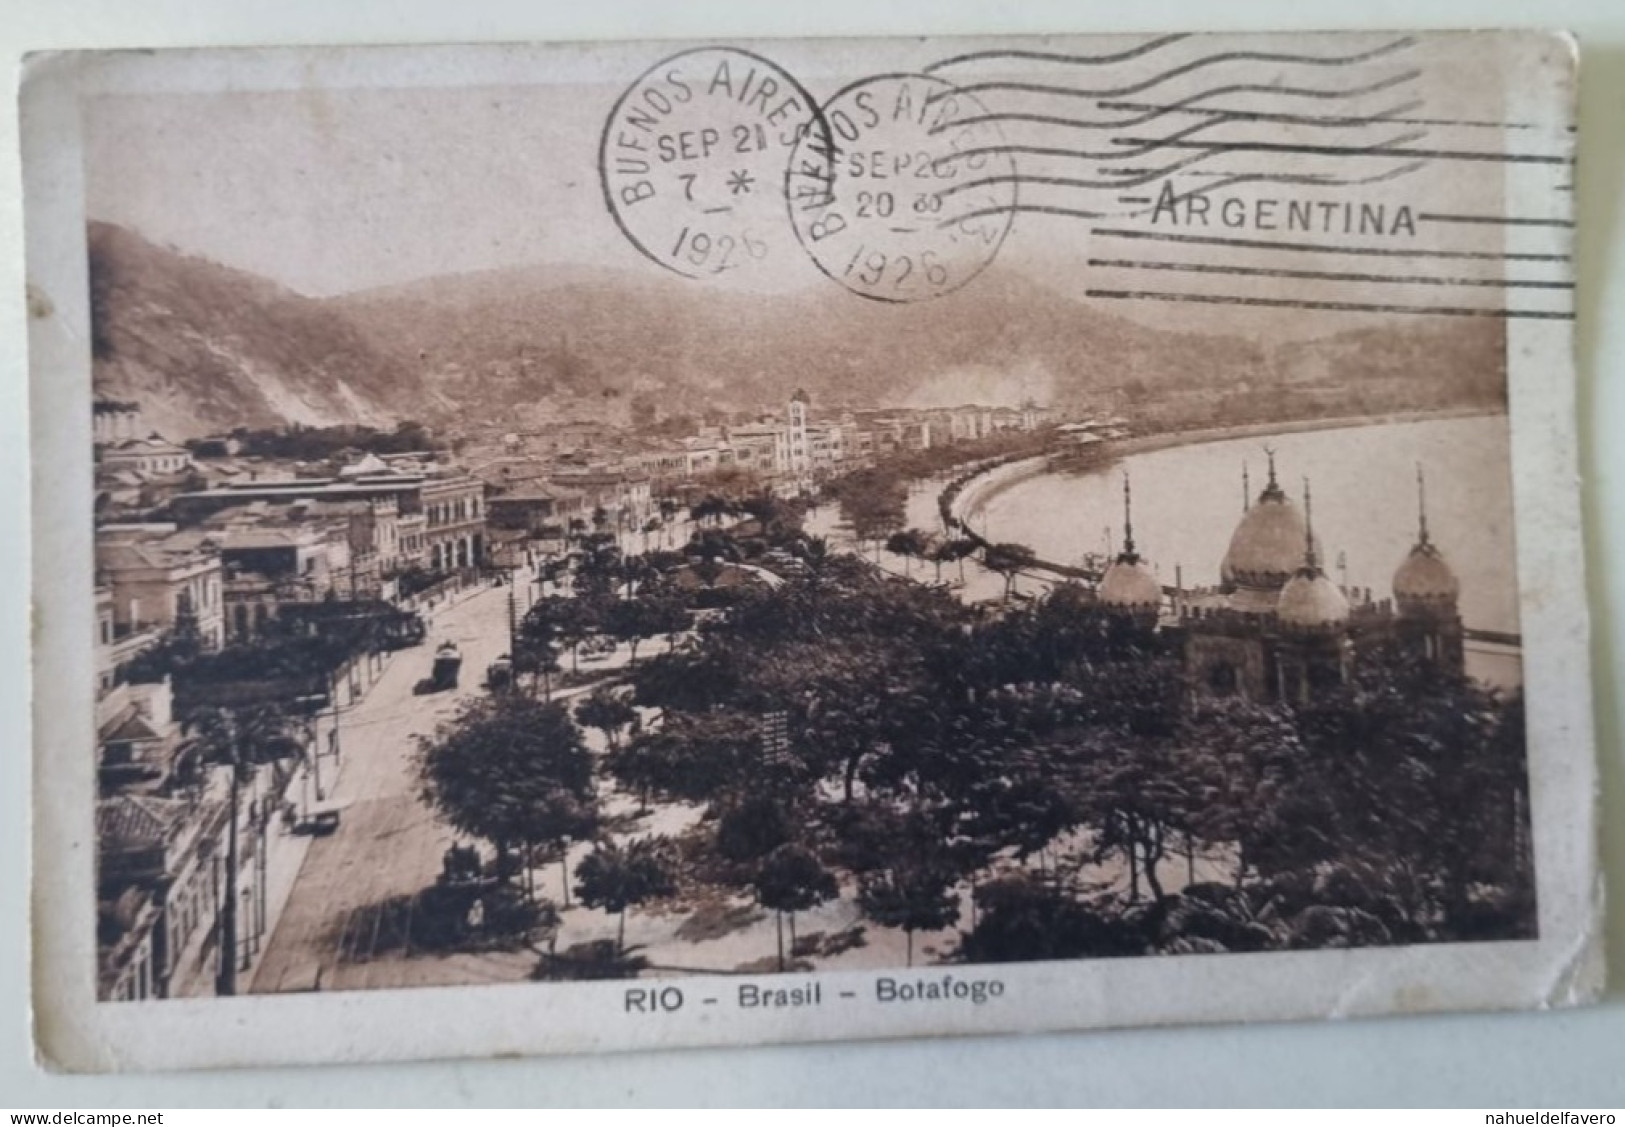 Postal Circulado Sem Selo 1926 - Brasil - RIO DE JANEIRO - Vista Panorãmica PRAIA VERMELHA E COPACABANA - Copacabana